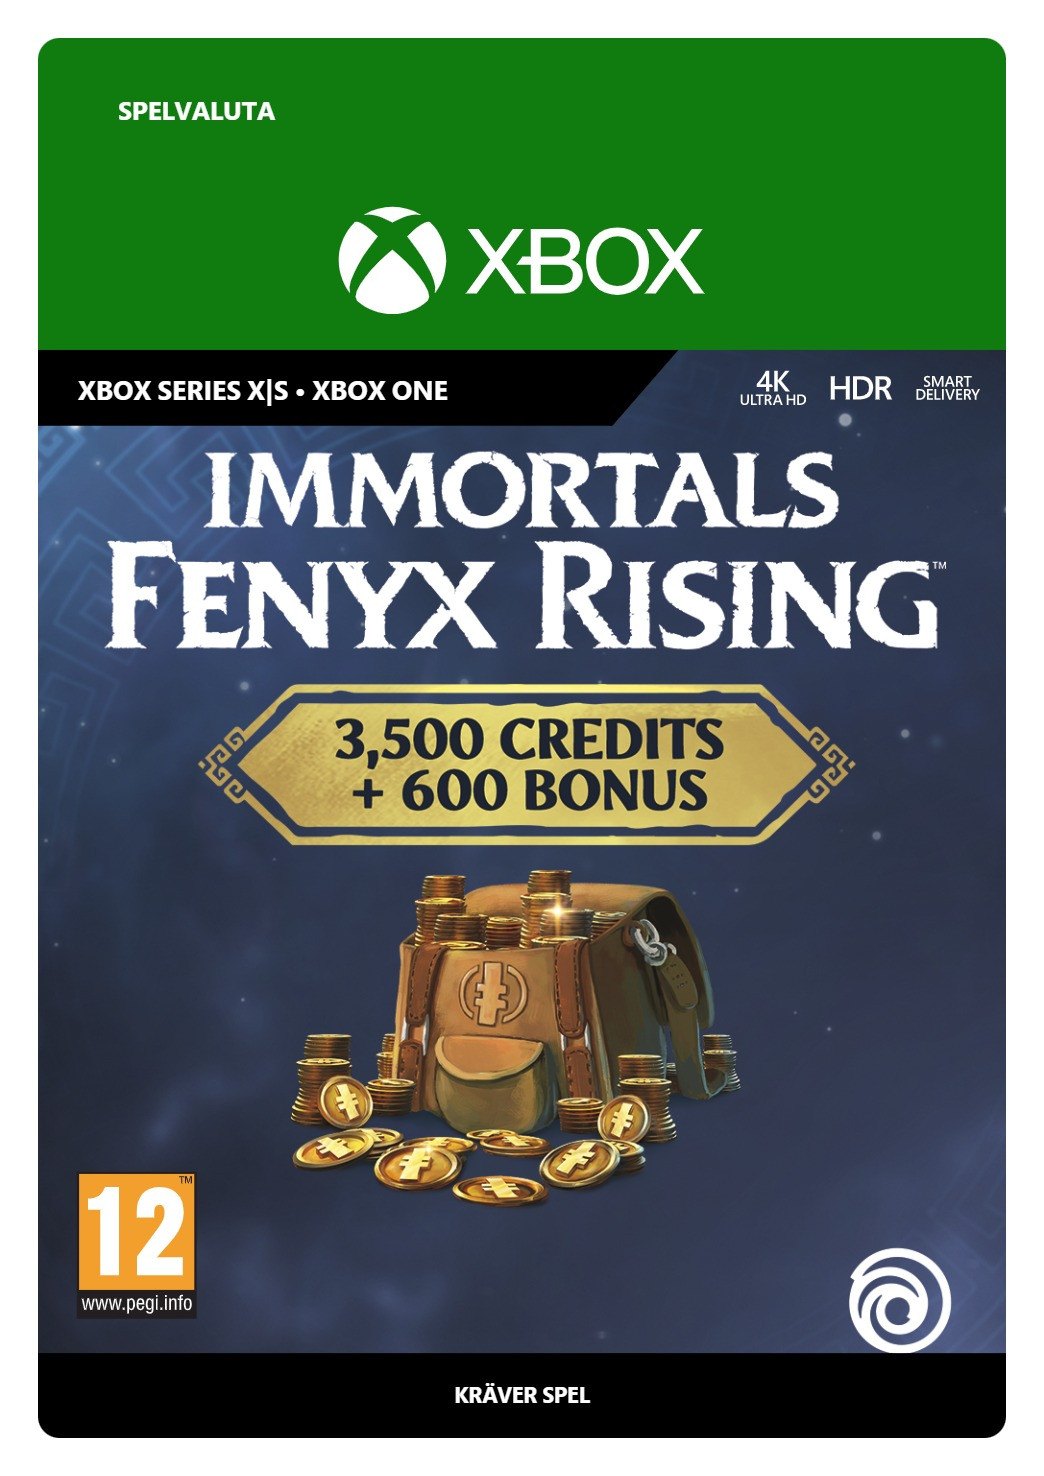 IMMORTALS FENYX RISING™ - Pacchetto Crediti colossale von Ubisoft